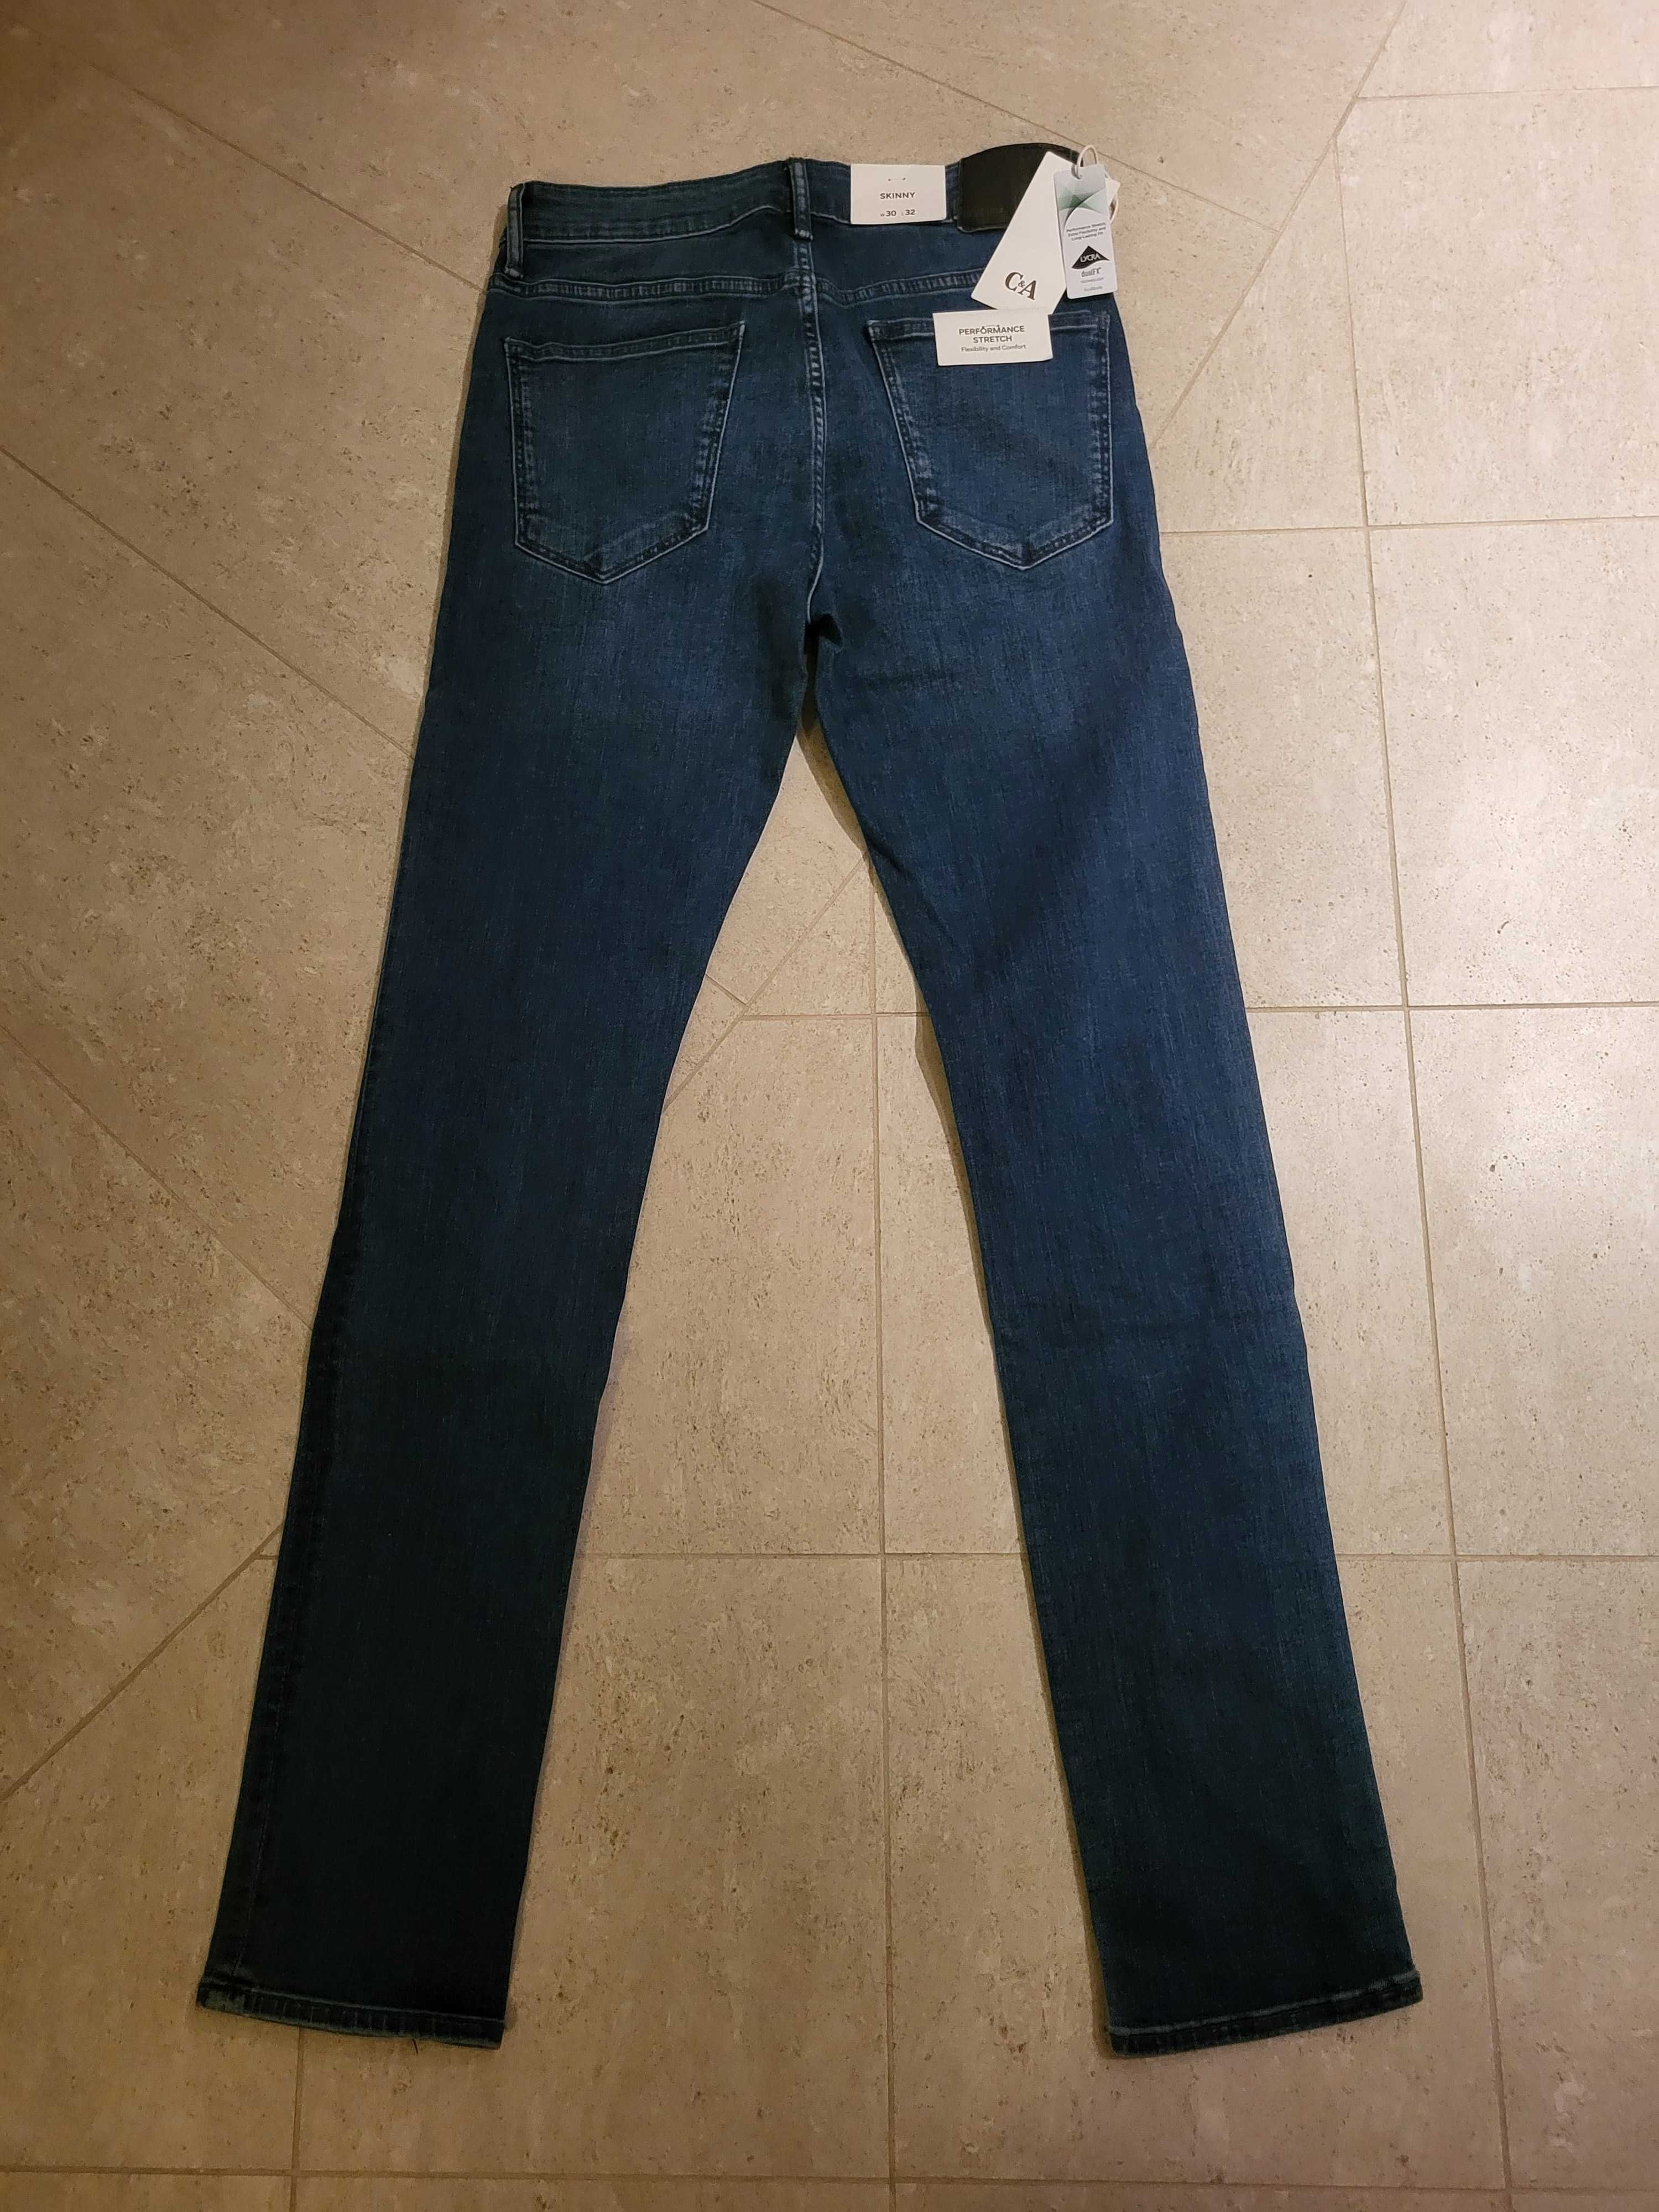 C&A spodnie męskie jeansy skinny stretch rozmiar W30 L32 nowe